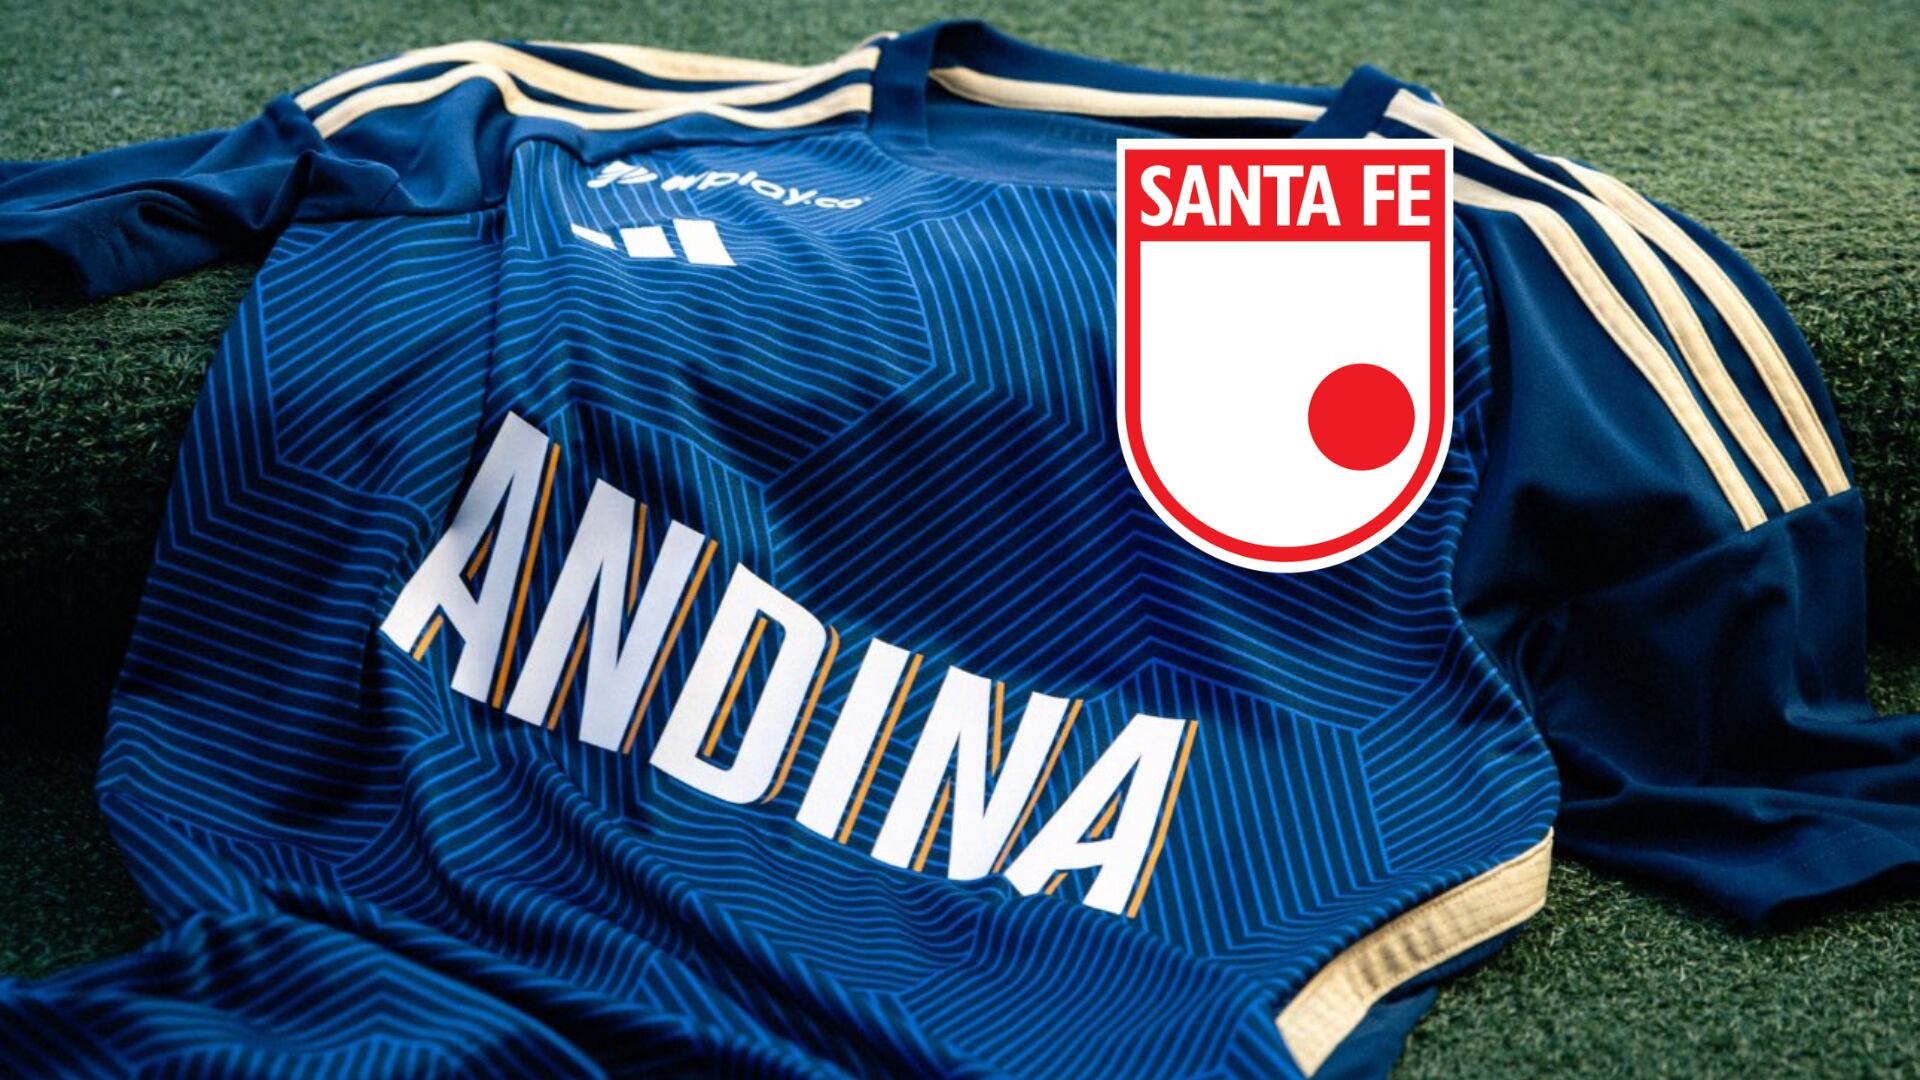 Andina, el principal patrocinador de Millonarios se burló de Santa Fe por no jugar Copa Libertadores - crédito @MillosFCoficial/X y Santa Fe